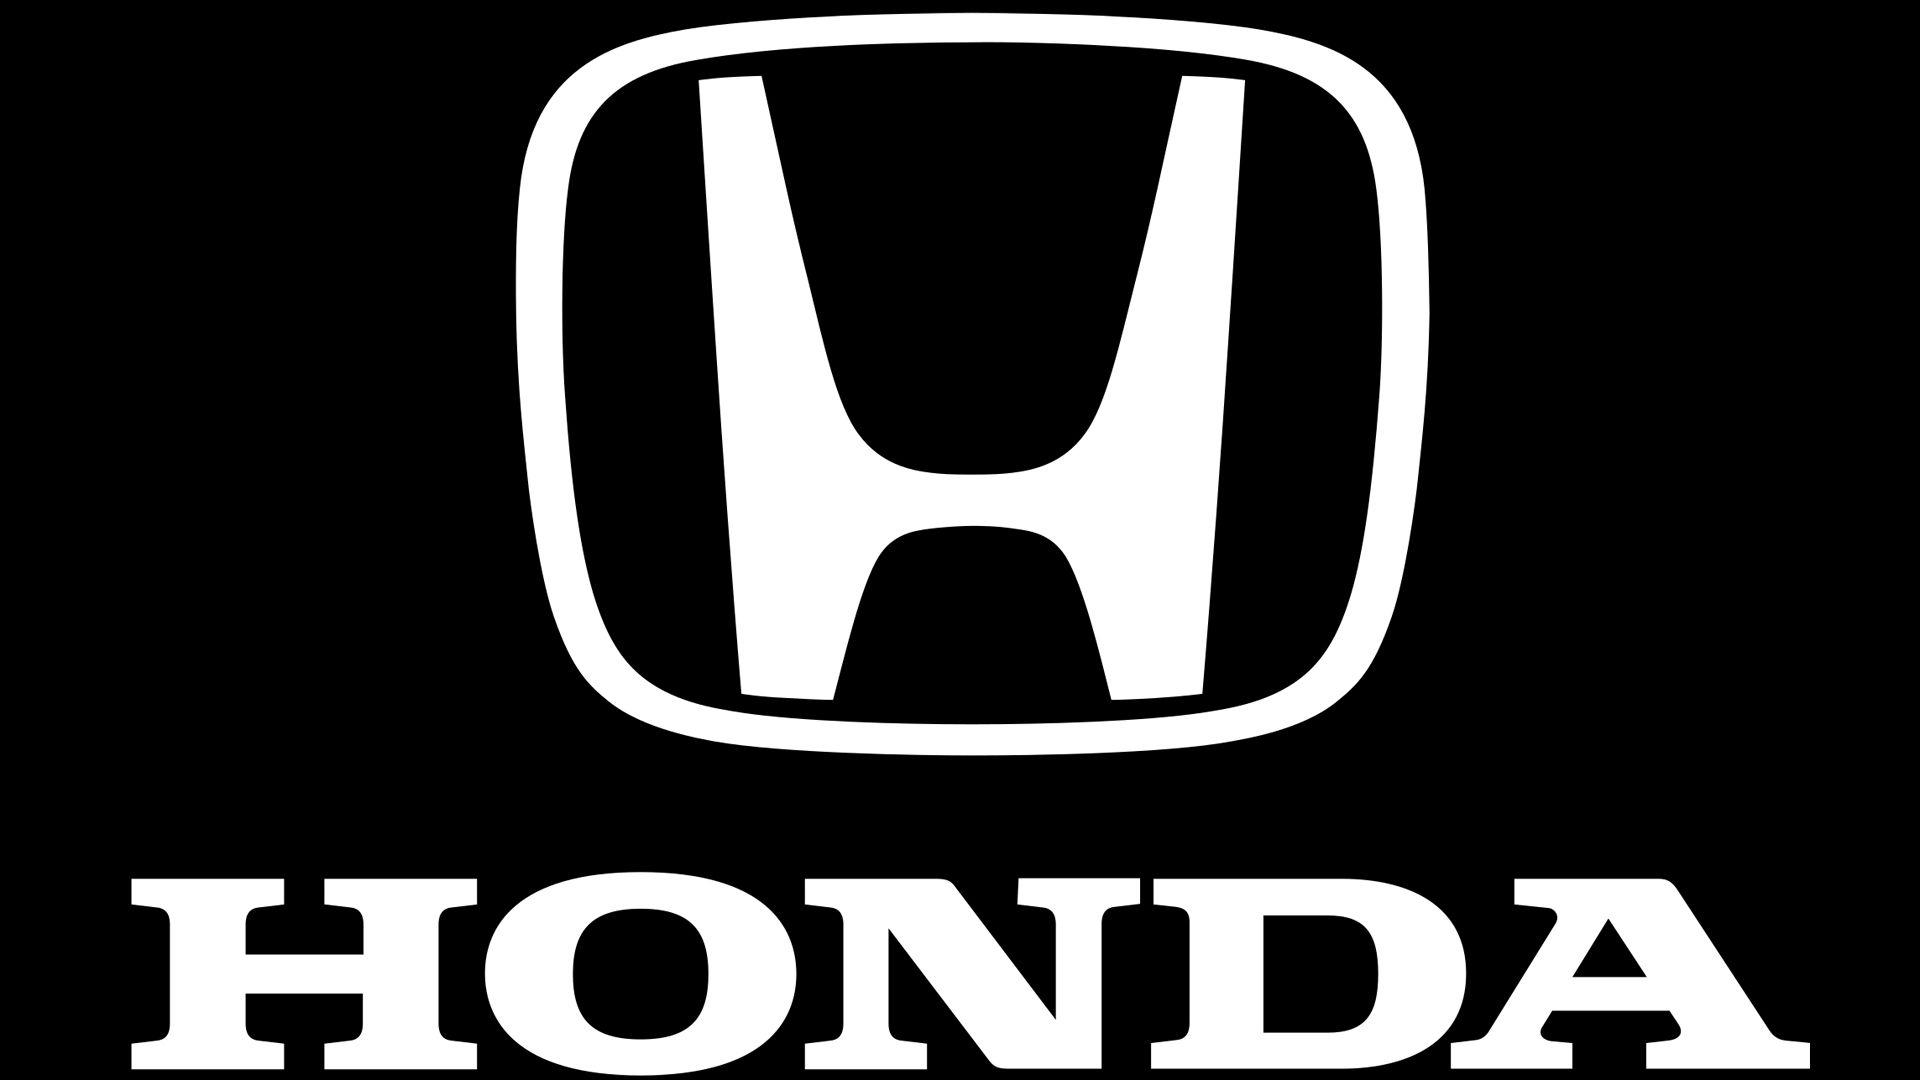 Honda Emblem Backgrounds - Wallpaper Cave